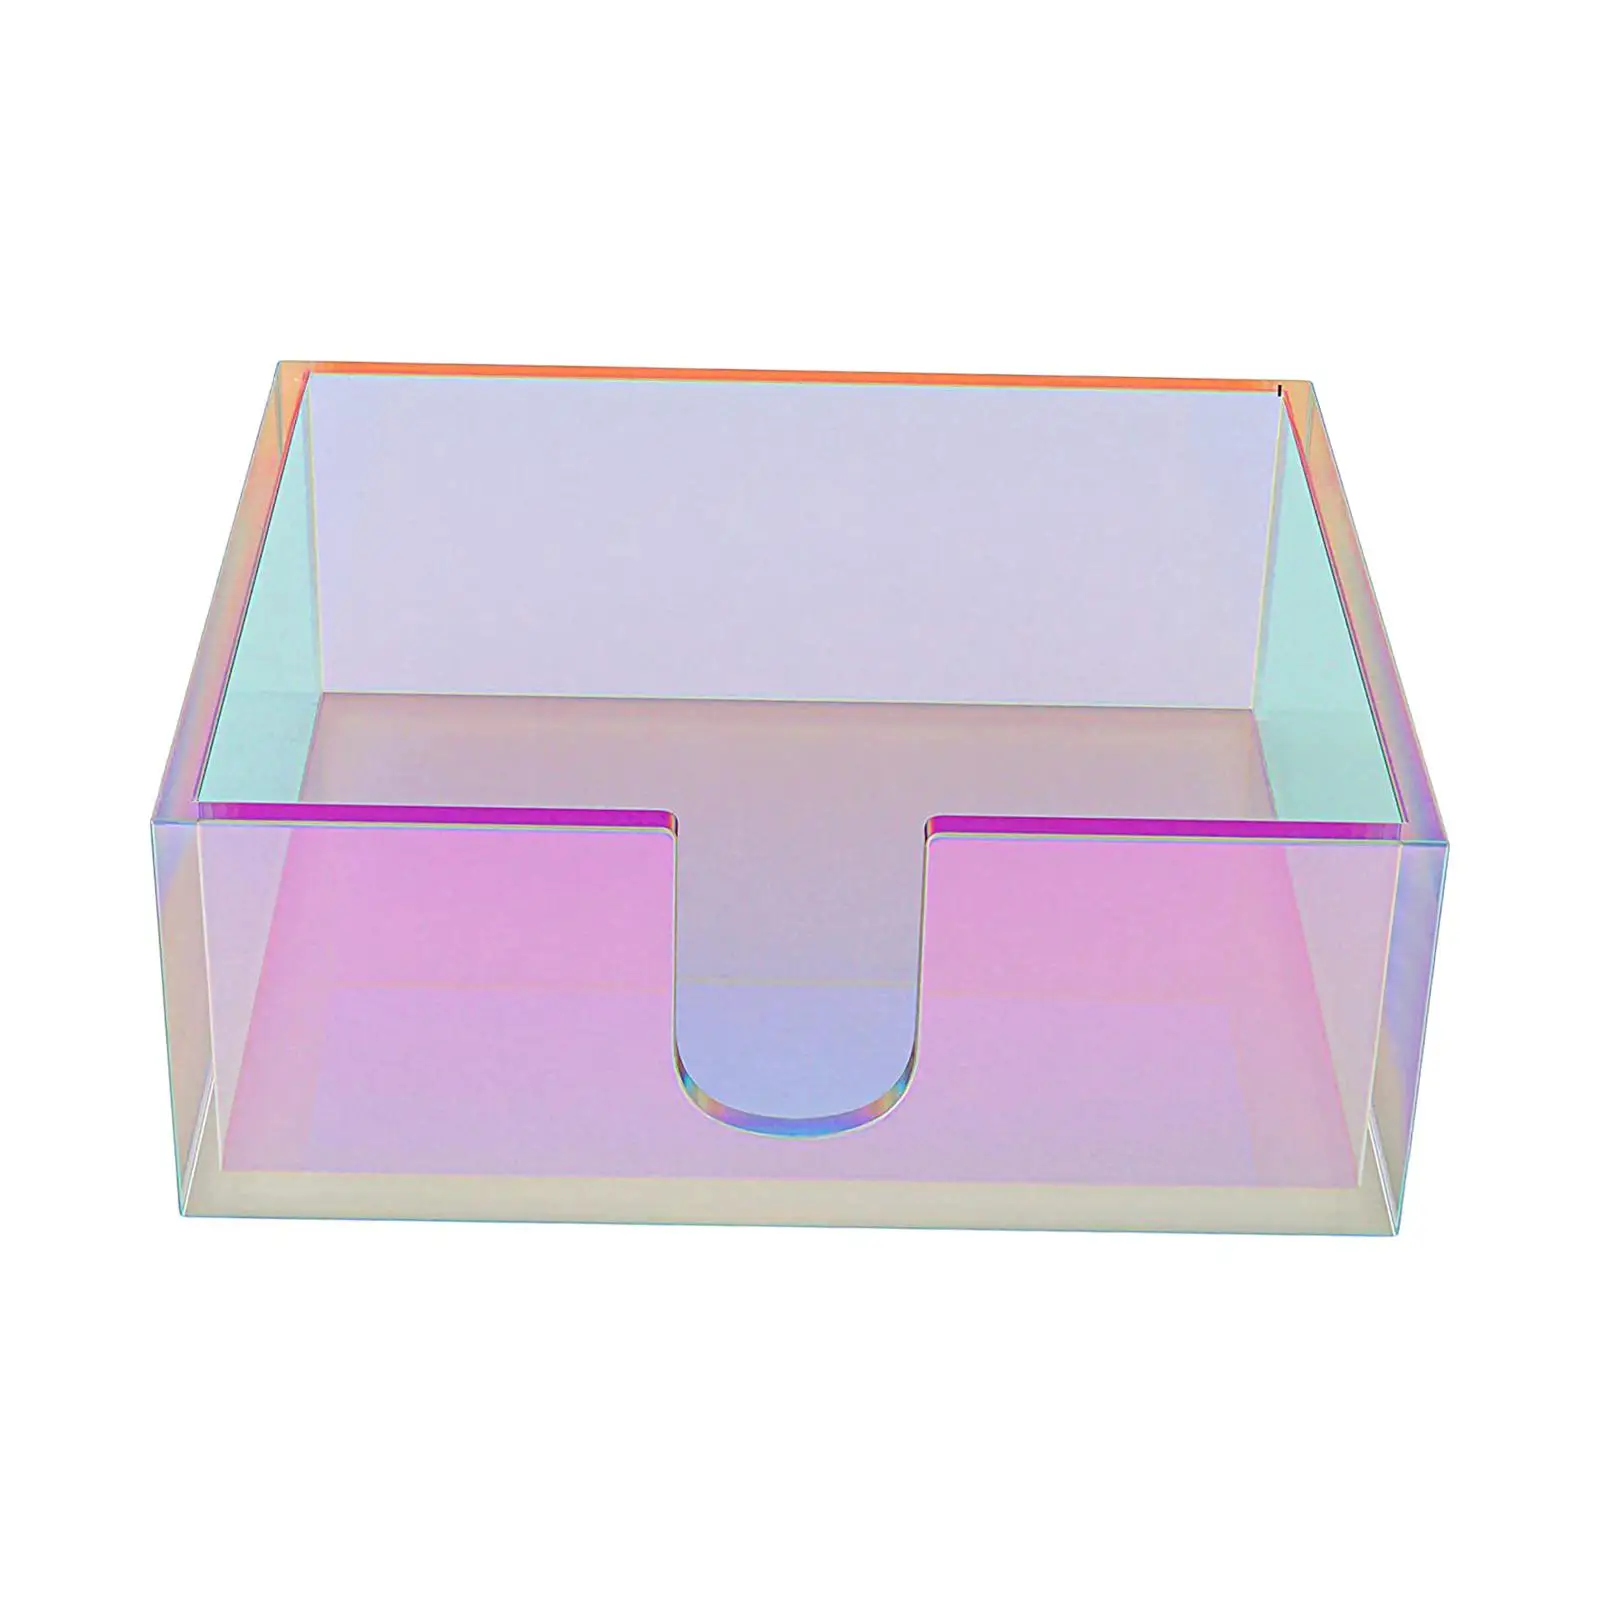 Elegant Paper Napkin Holder Case Iridescent Durable Creative Dispenser Container